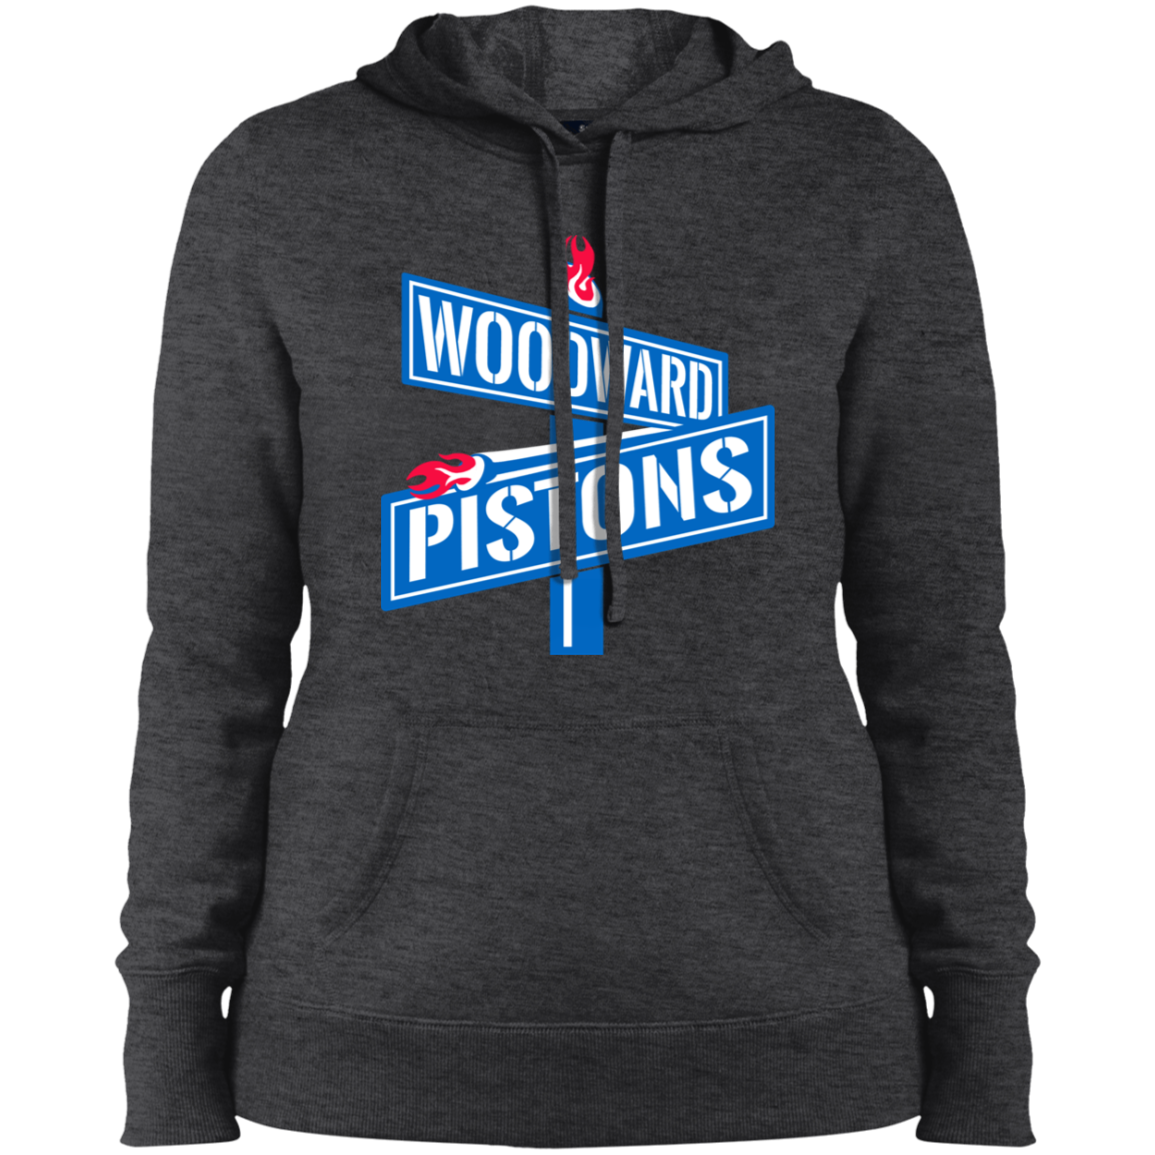 WOODWARD PISTONS Women's Hoodie